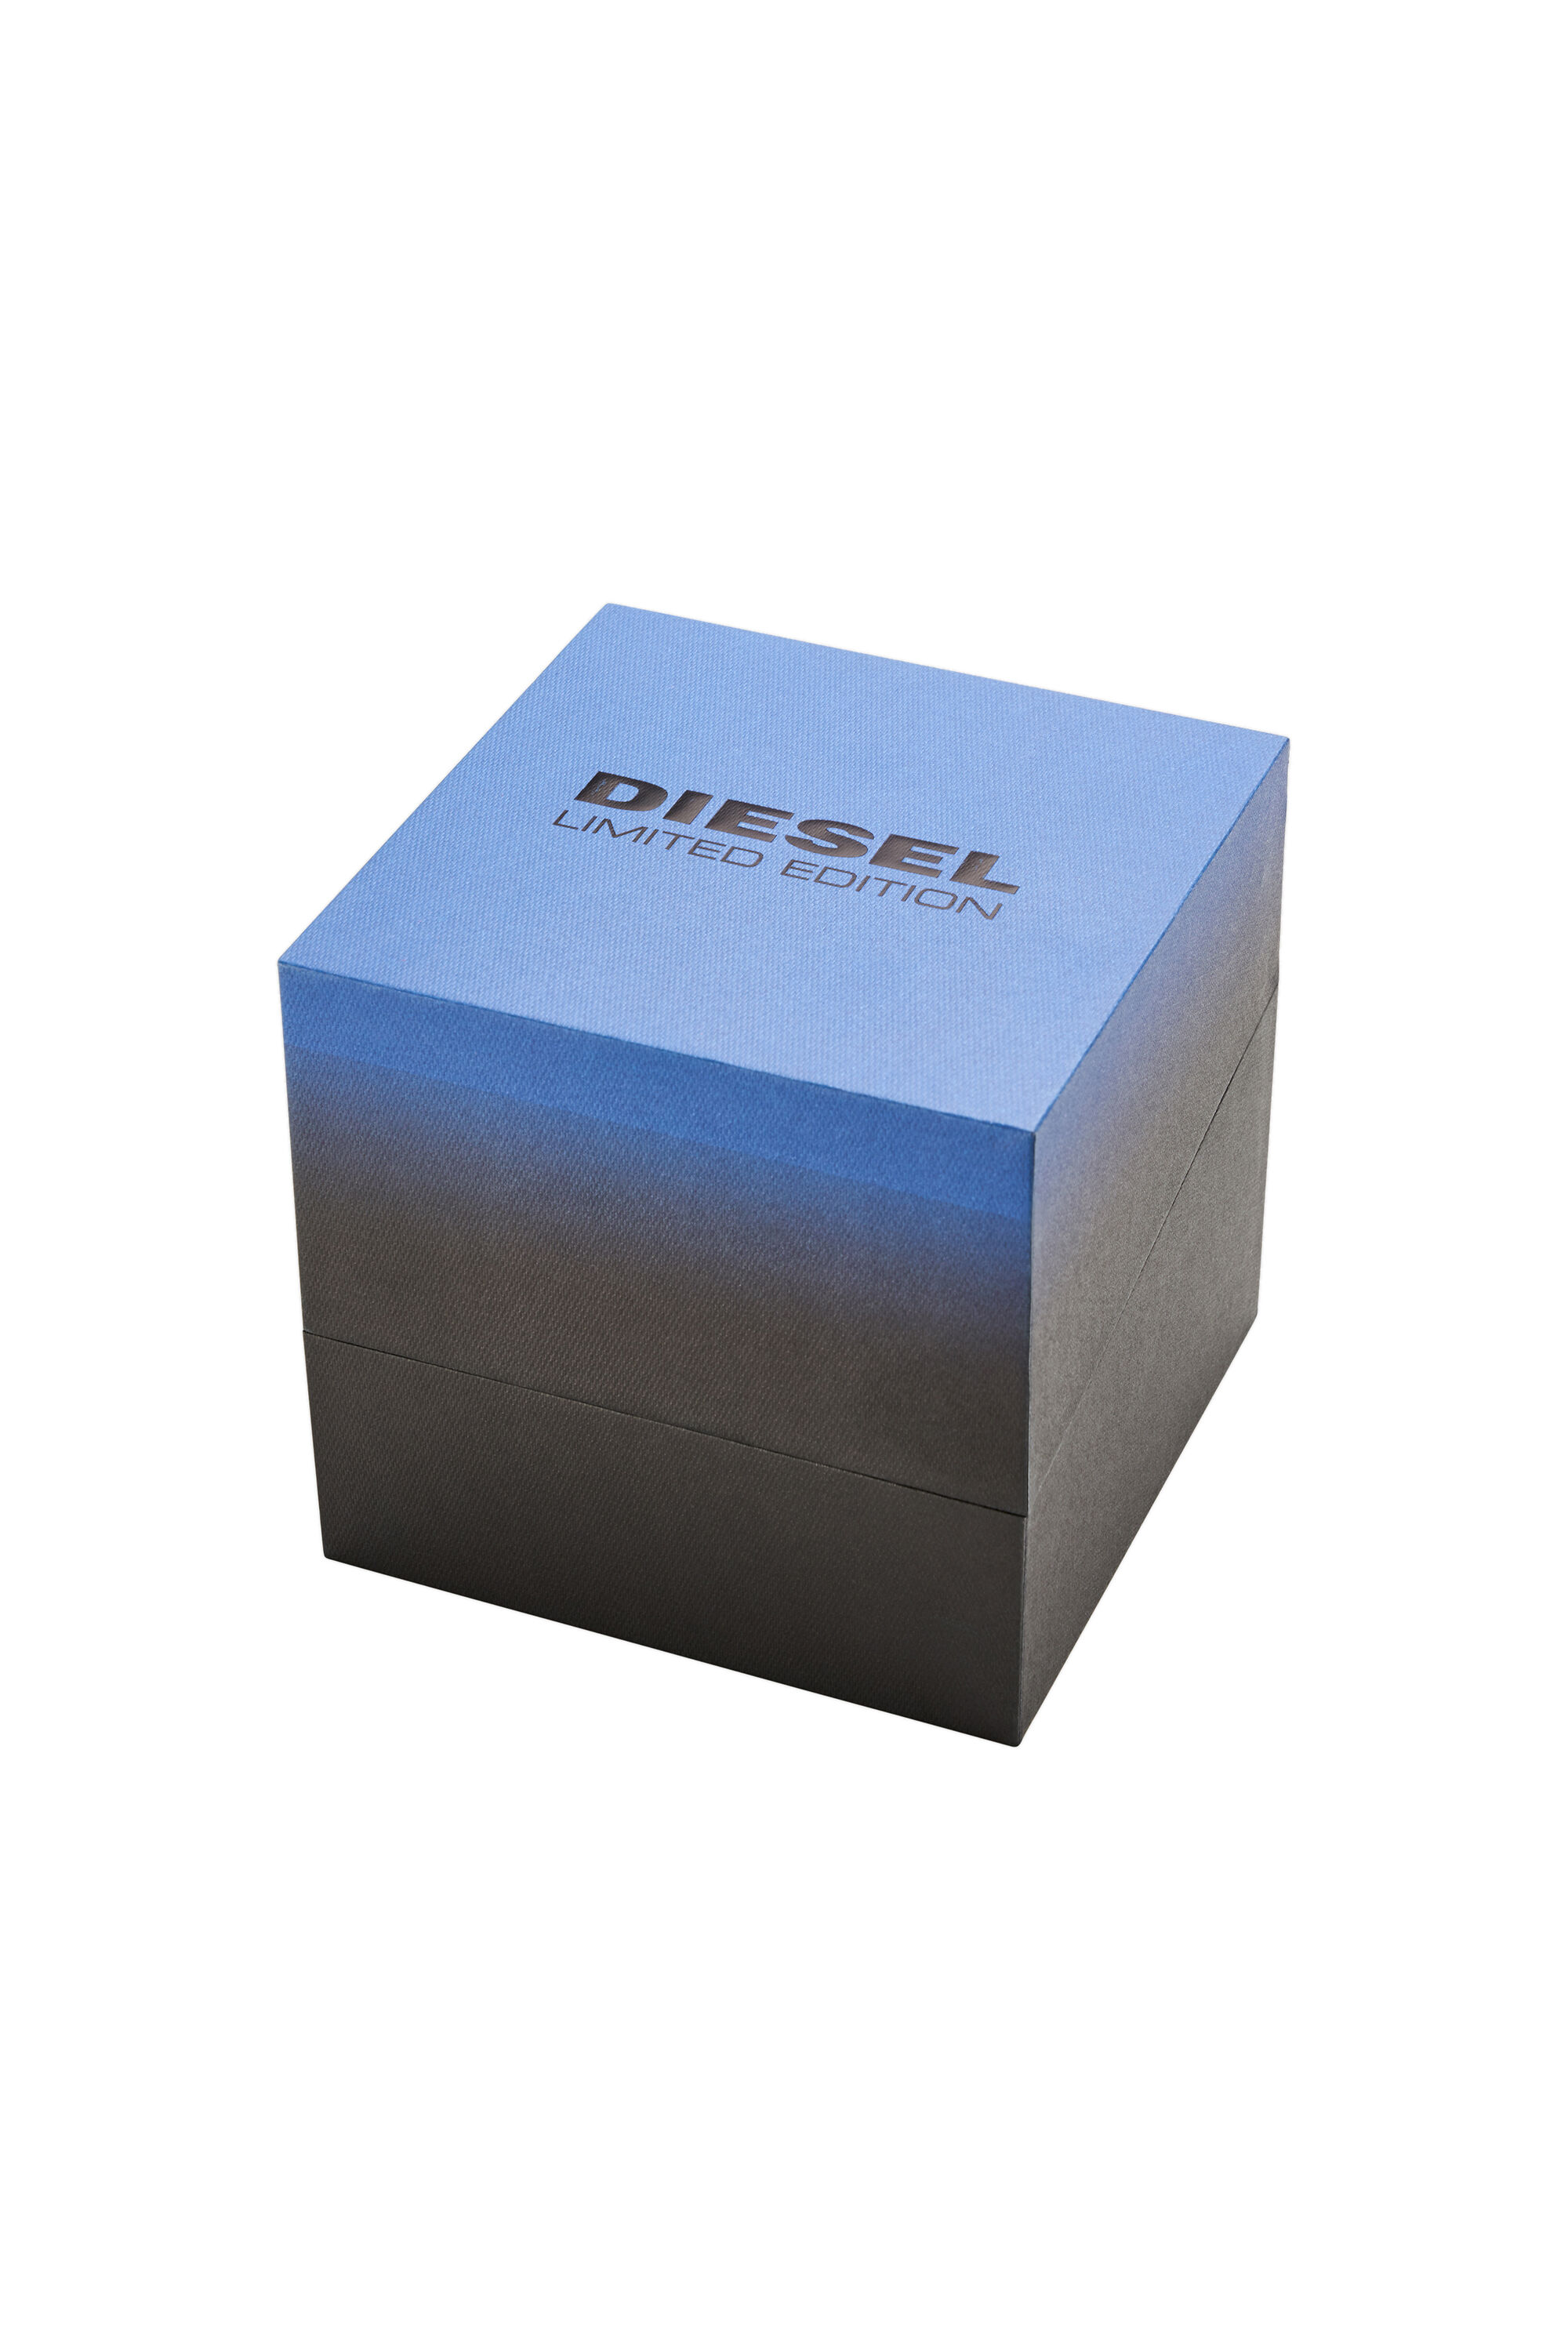 Diesel - DZ4553, Negro/Azul marino - Image 5